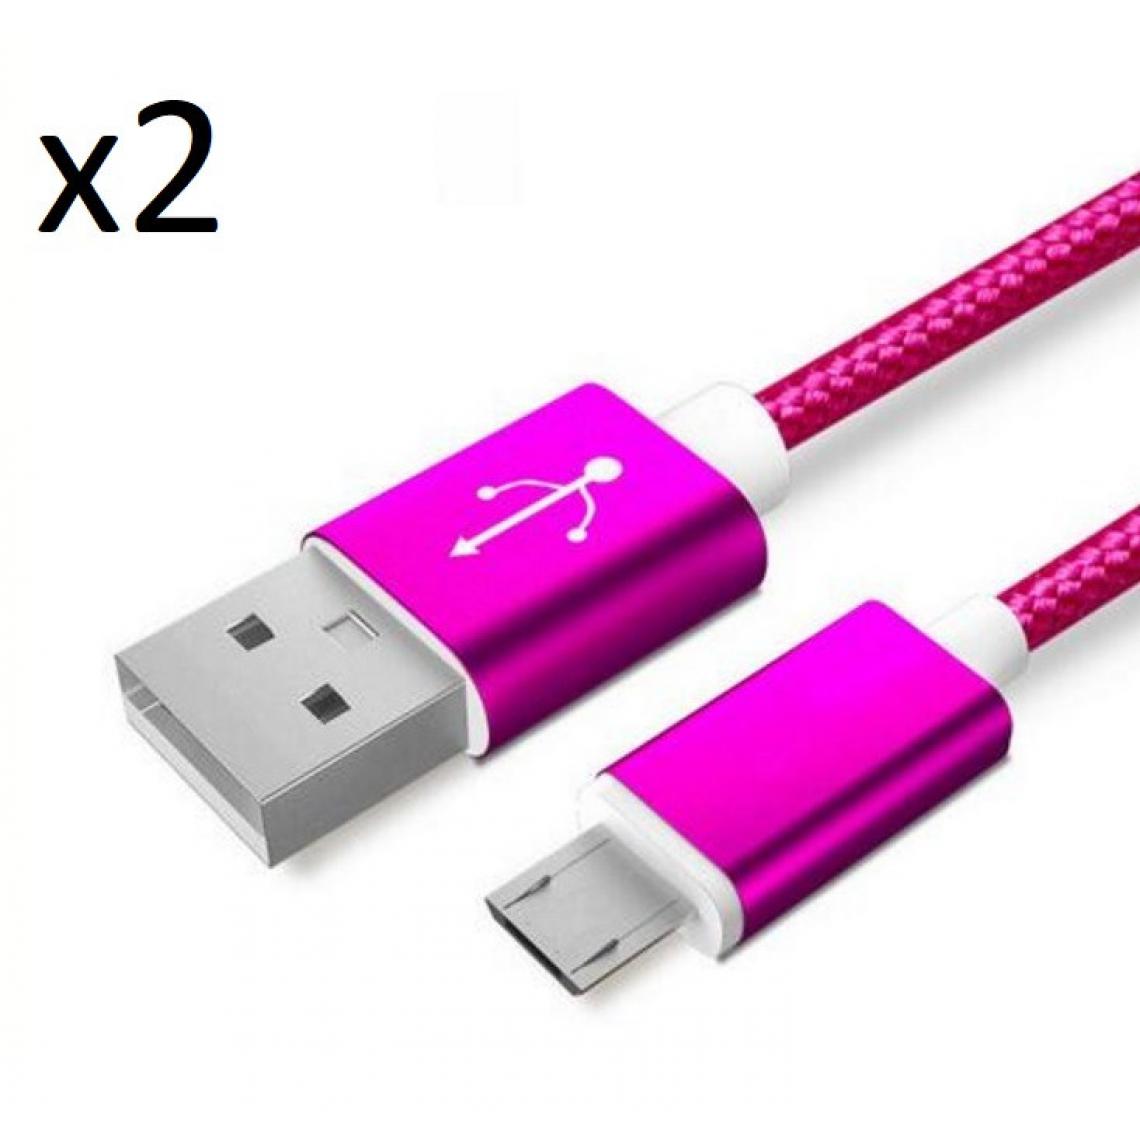 Shot - Pack de 2 Cables Metal Nylon Micro USB pour WIKO View 4 Lite Smartphone Android Chargeur (ROSE BONBON) - Chargeur secteur téléphone